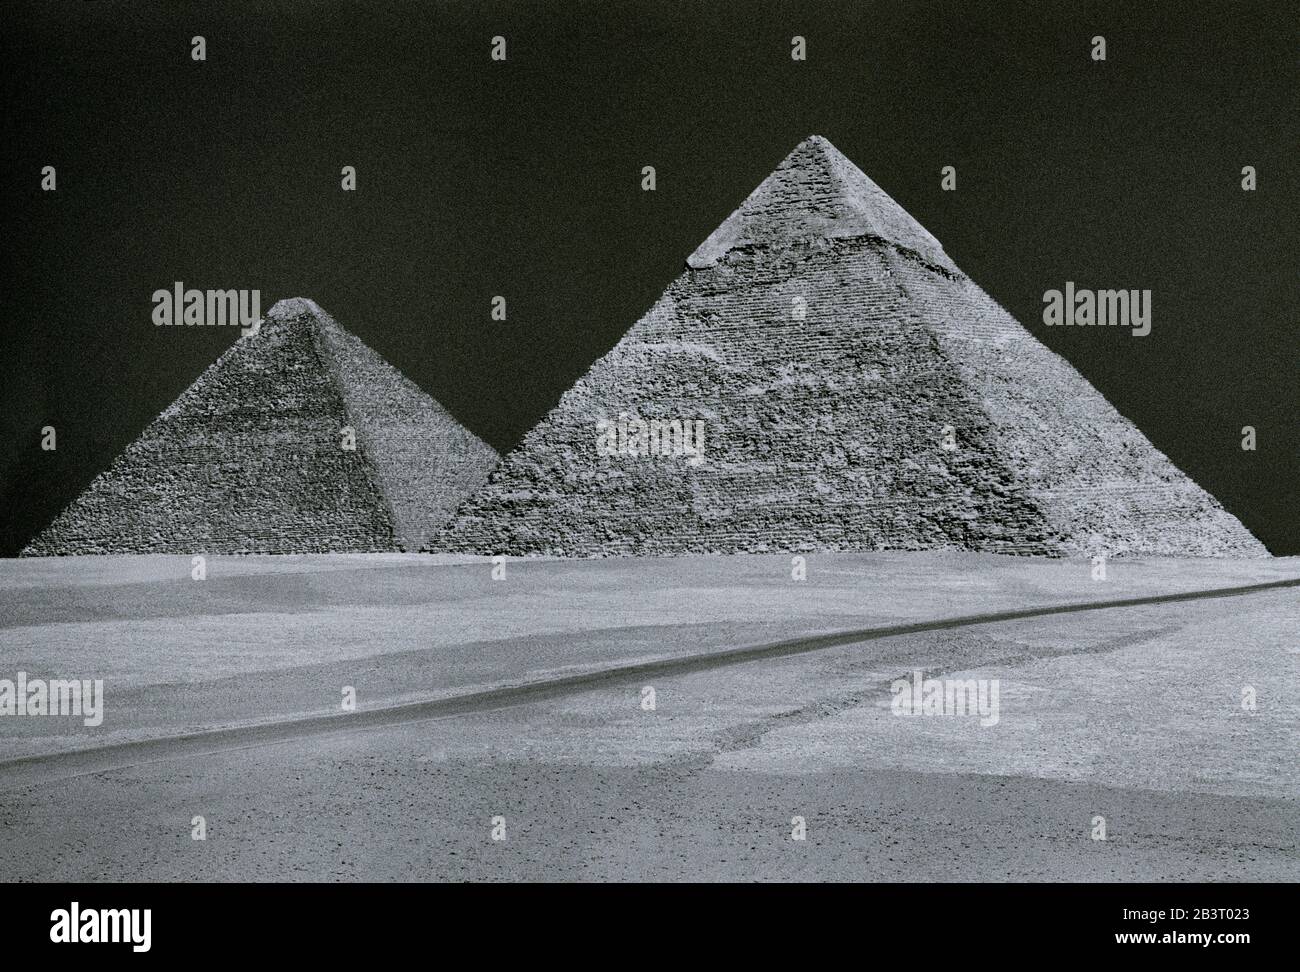 Reise-Fotografie in Schwarz und Weiß - Pyramide von Khafre und die große Pyramide Cheops oder Khufu an den Pyramiden von Gizeh in Kairo in Ägypten in Nordafrika Stockfoto